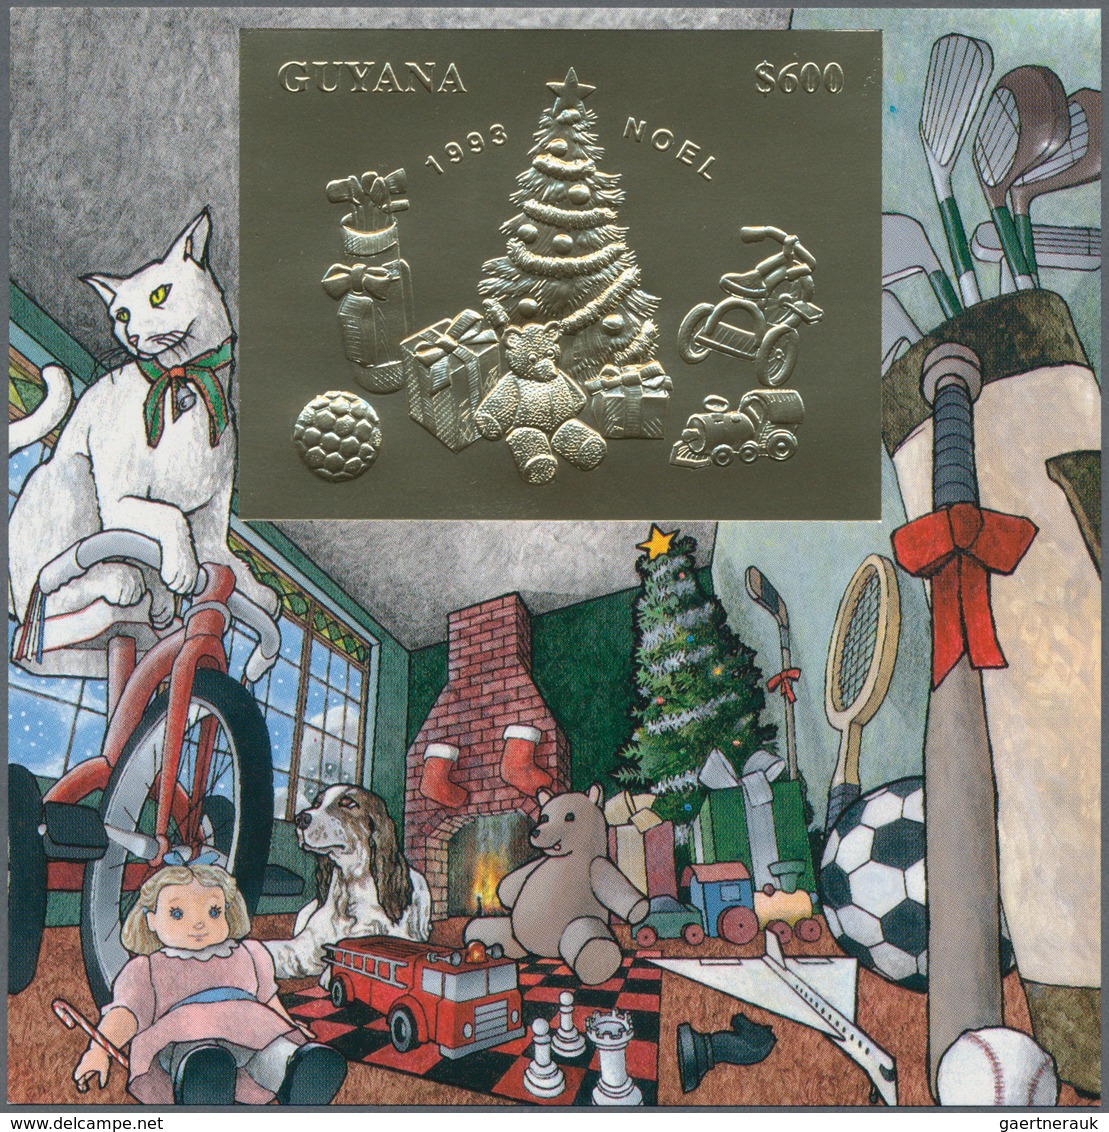 25898 Thematik: Weihnachten / christmas: 1993, Guyana. Set of 8 different souvenir sheets CHRISTMAS, each